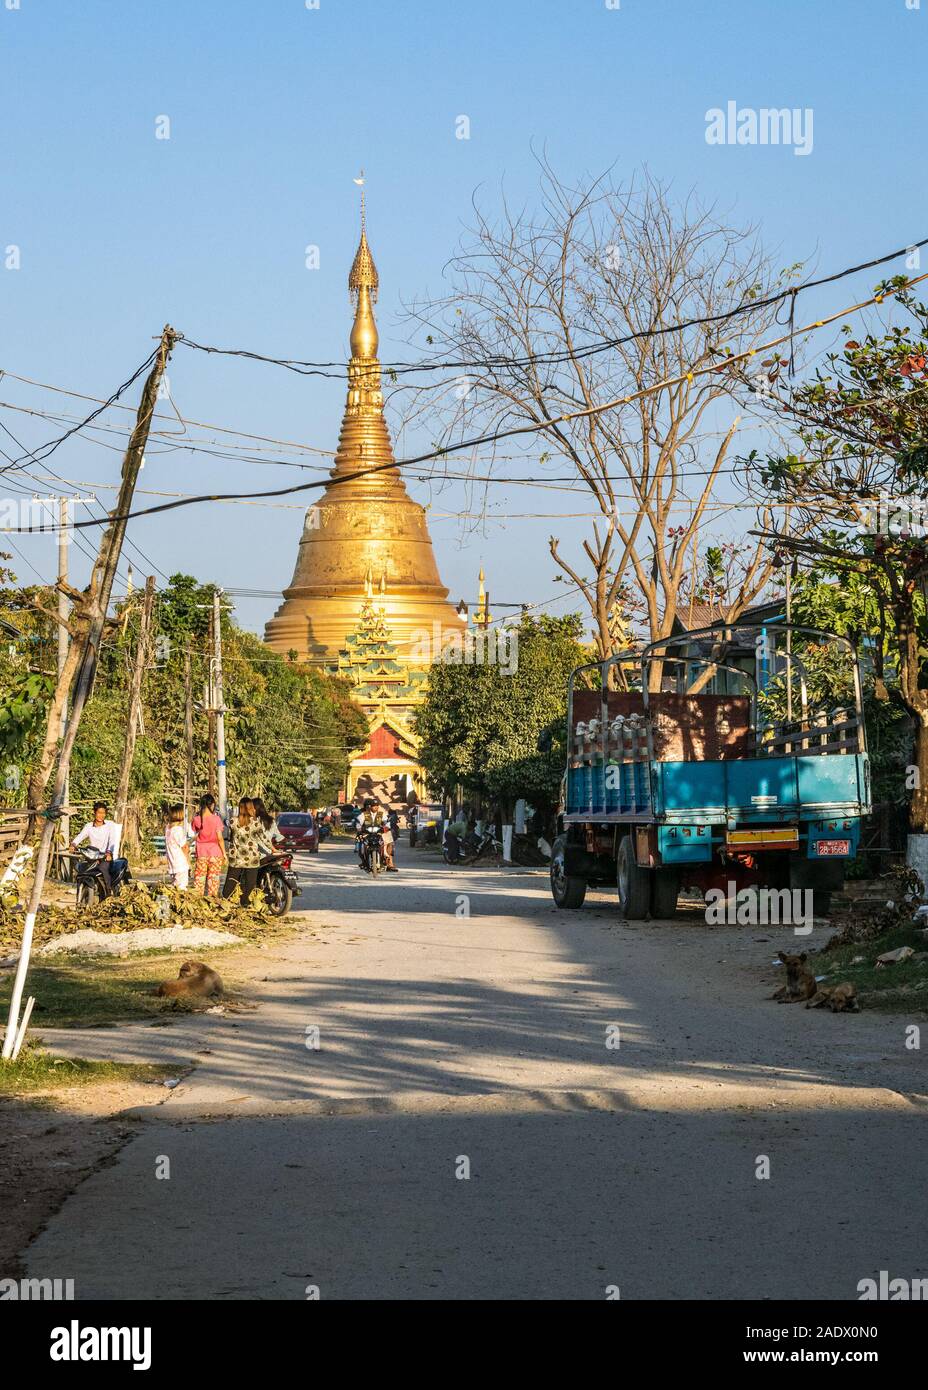 La gente local acerca de su vida cotidiana en un pequeño pueblo birmano de Taungoo, Myanmar, con la famosa pagoda Swesandaw en el fondo. Foto de stock